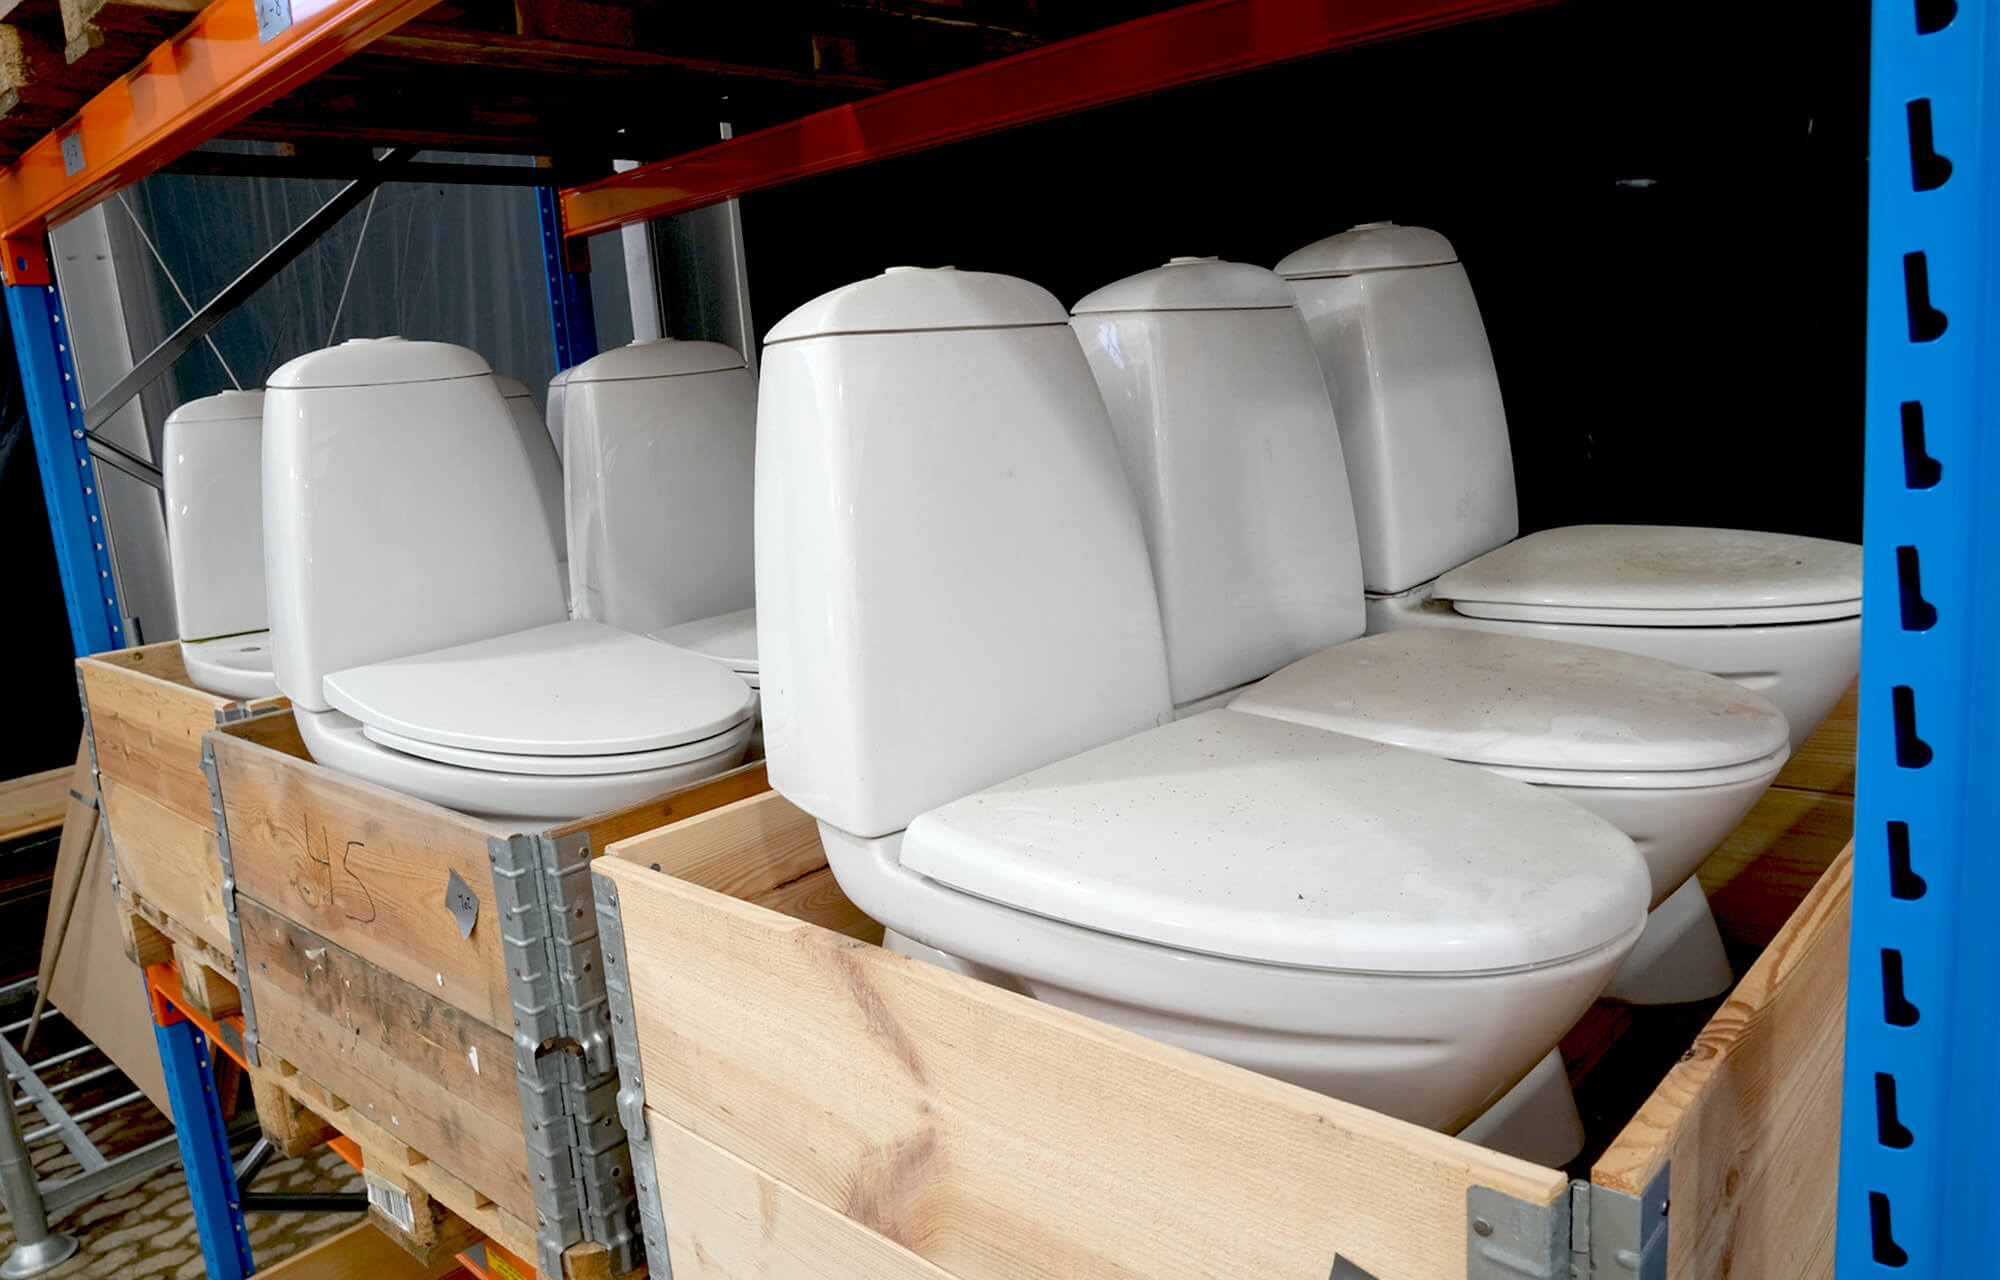 Toiletter i palleramme, på genbrugslageret i Høje Taastrup